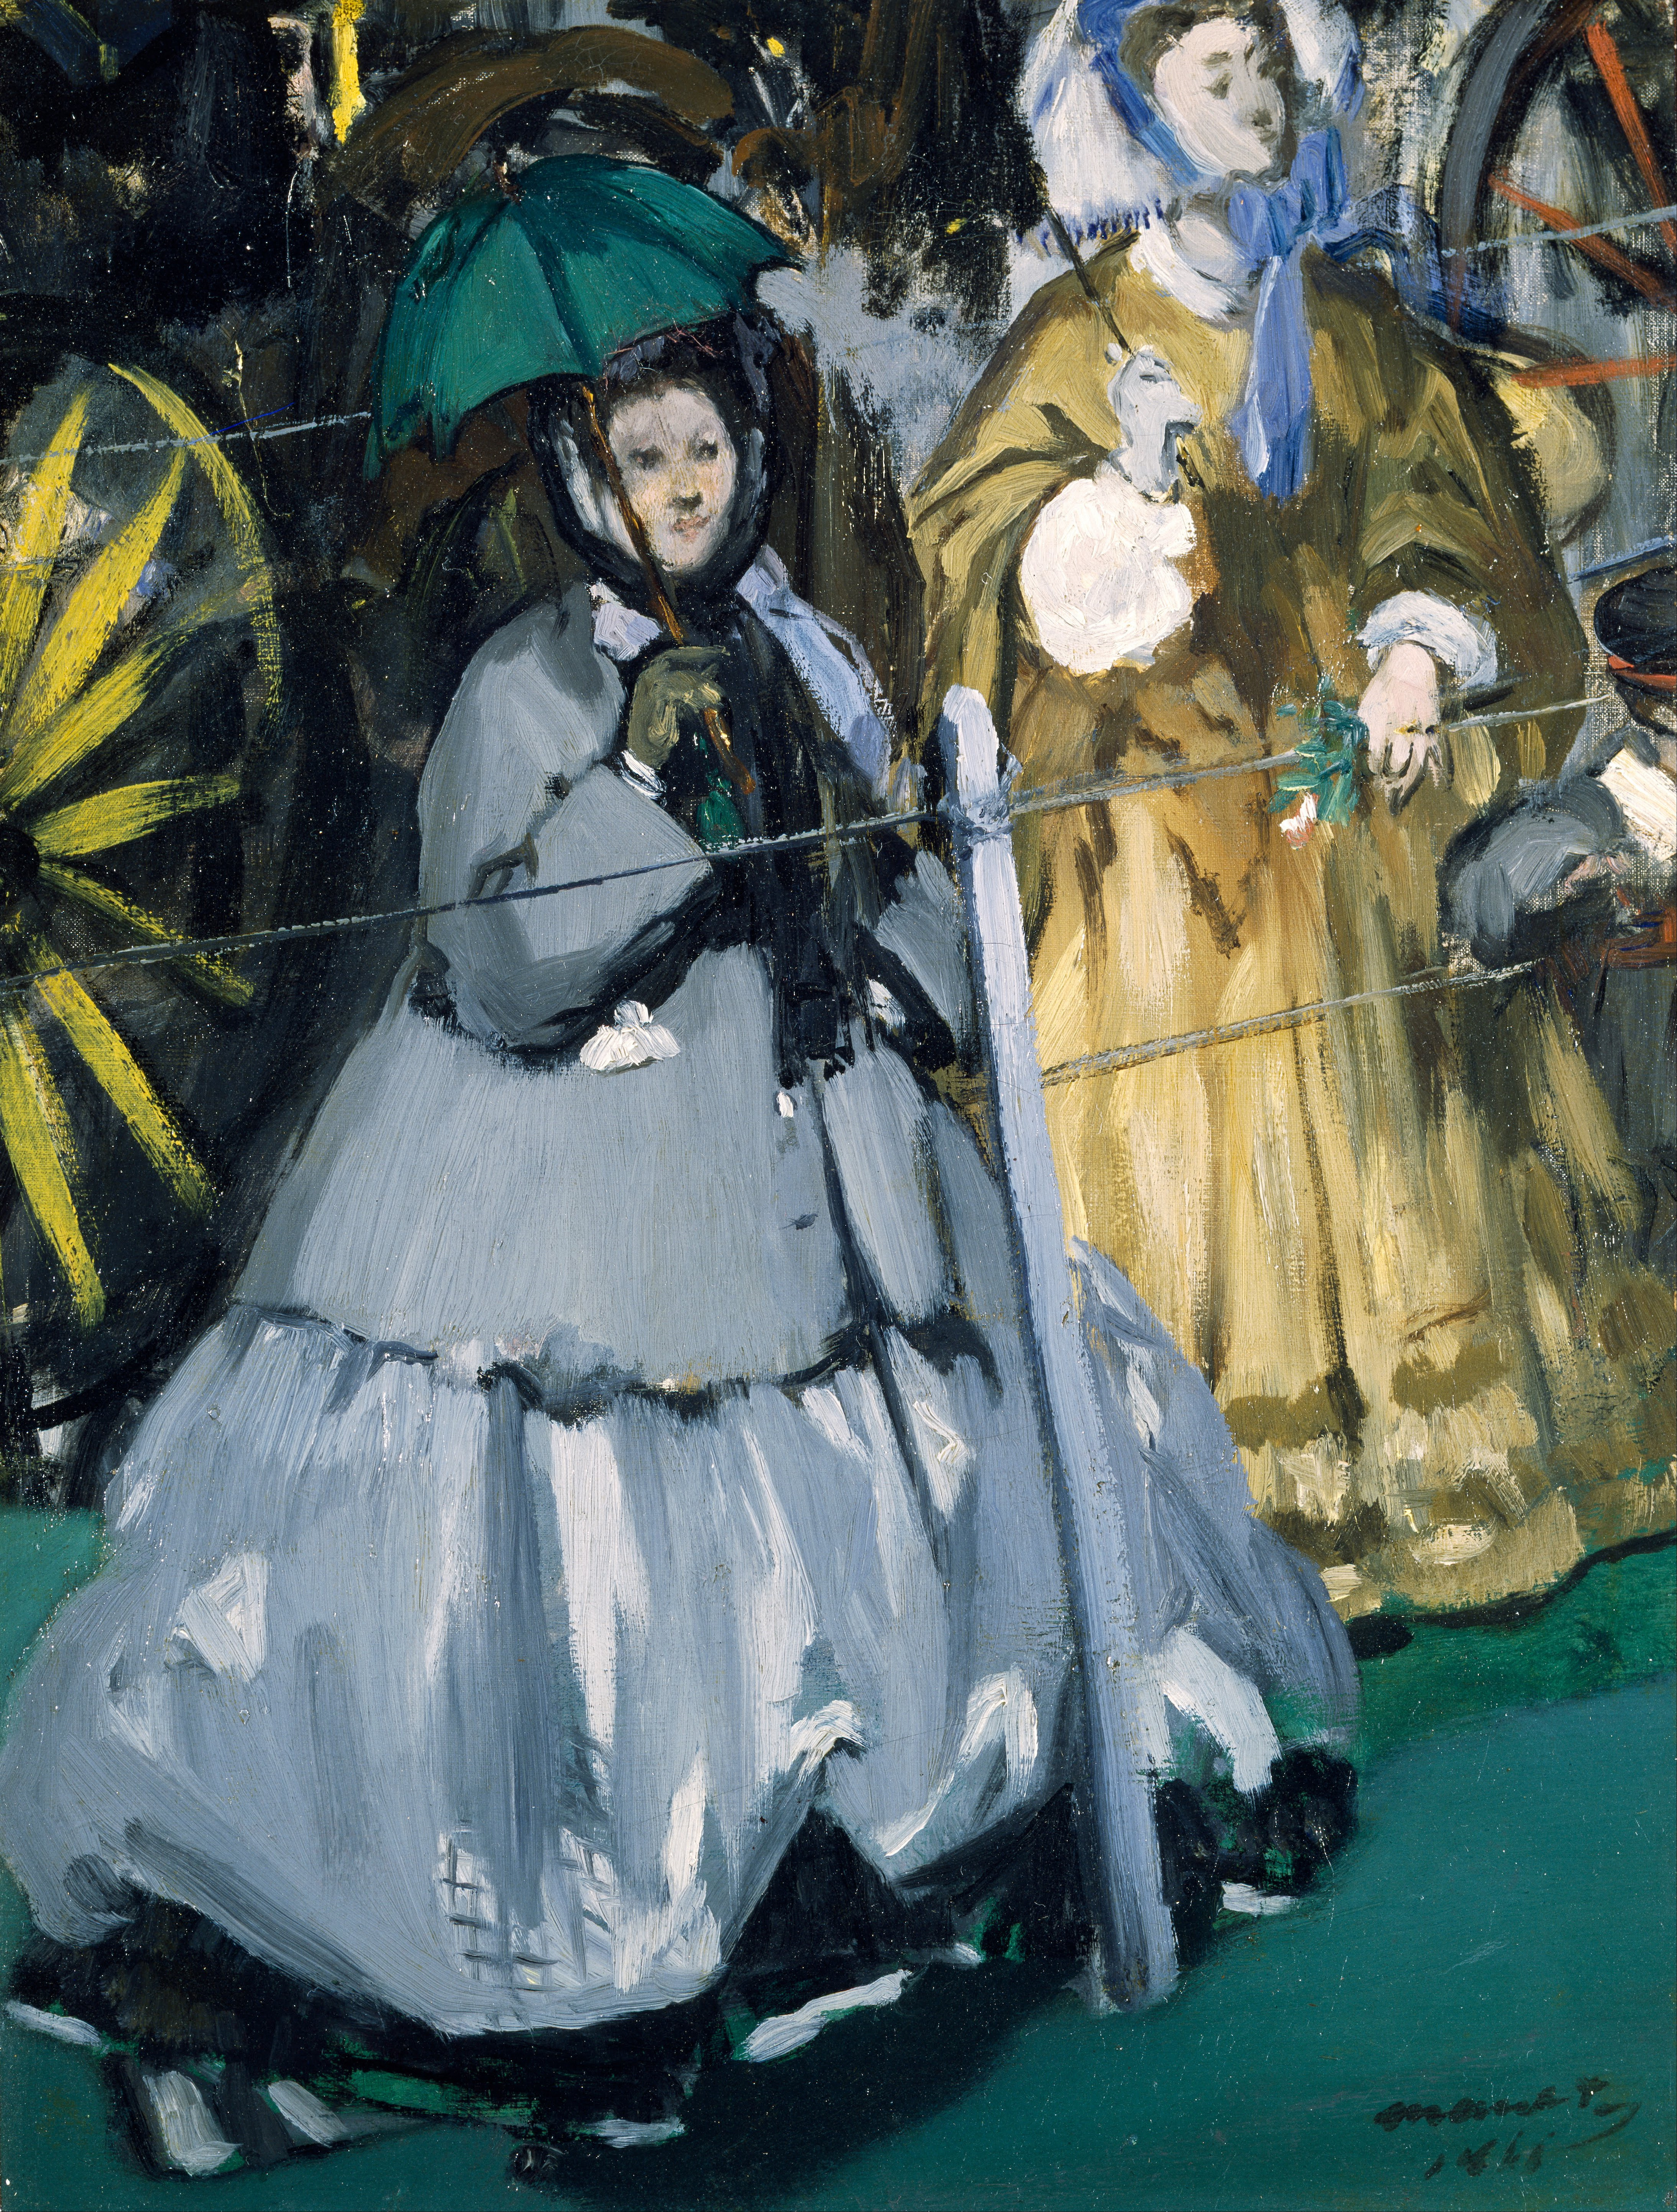 Donne alle corse by Édouard Manet - 1866 - 42,2 x 32,1 cm 